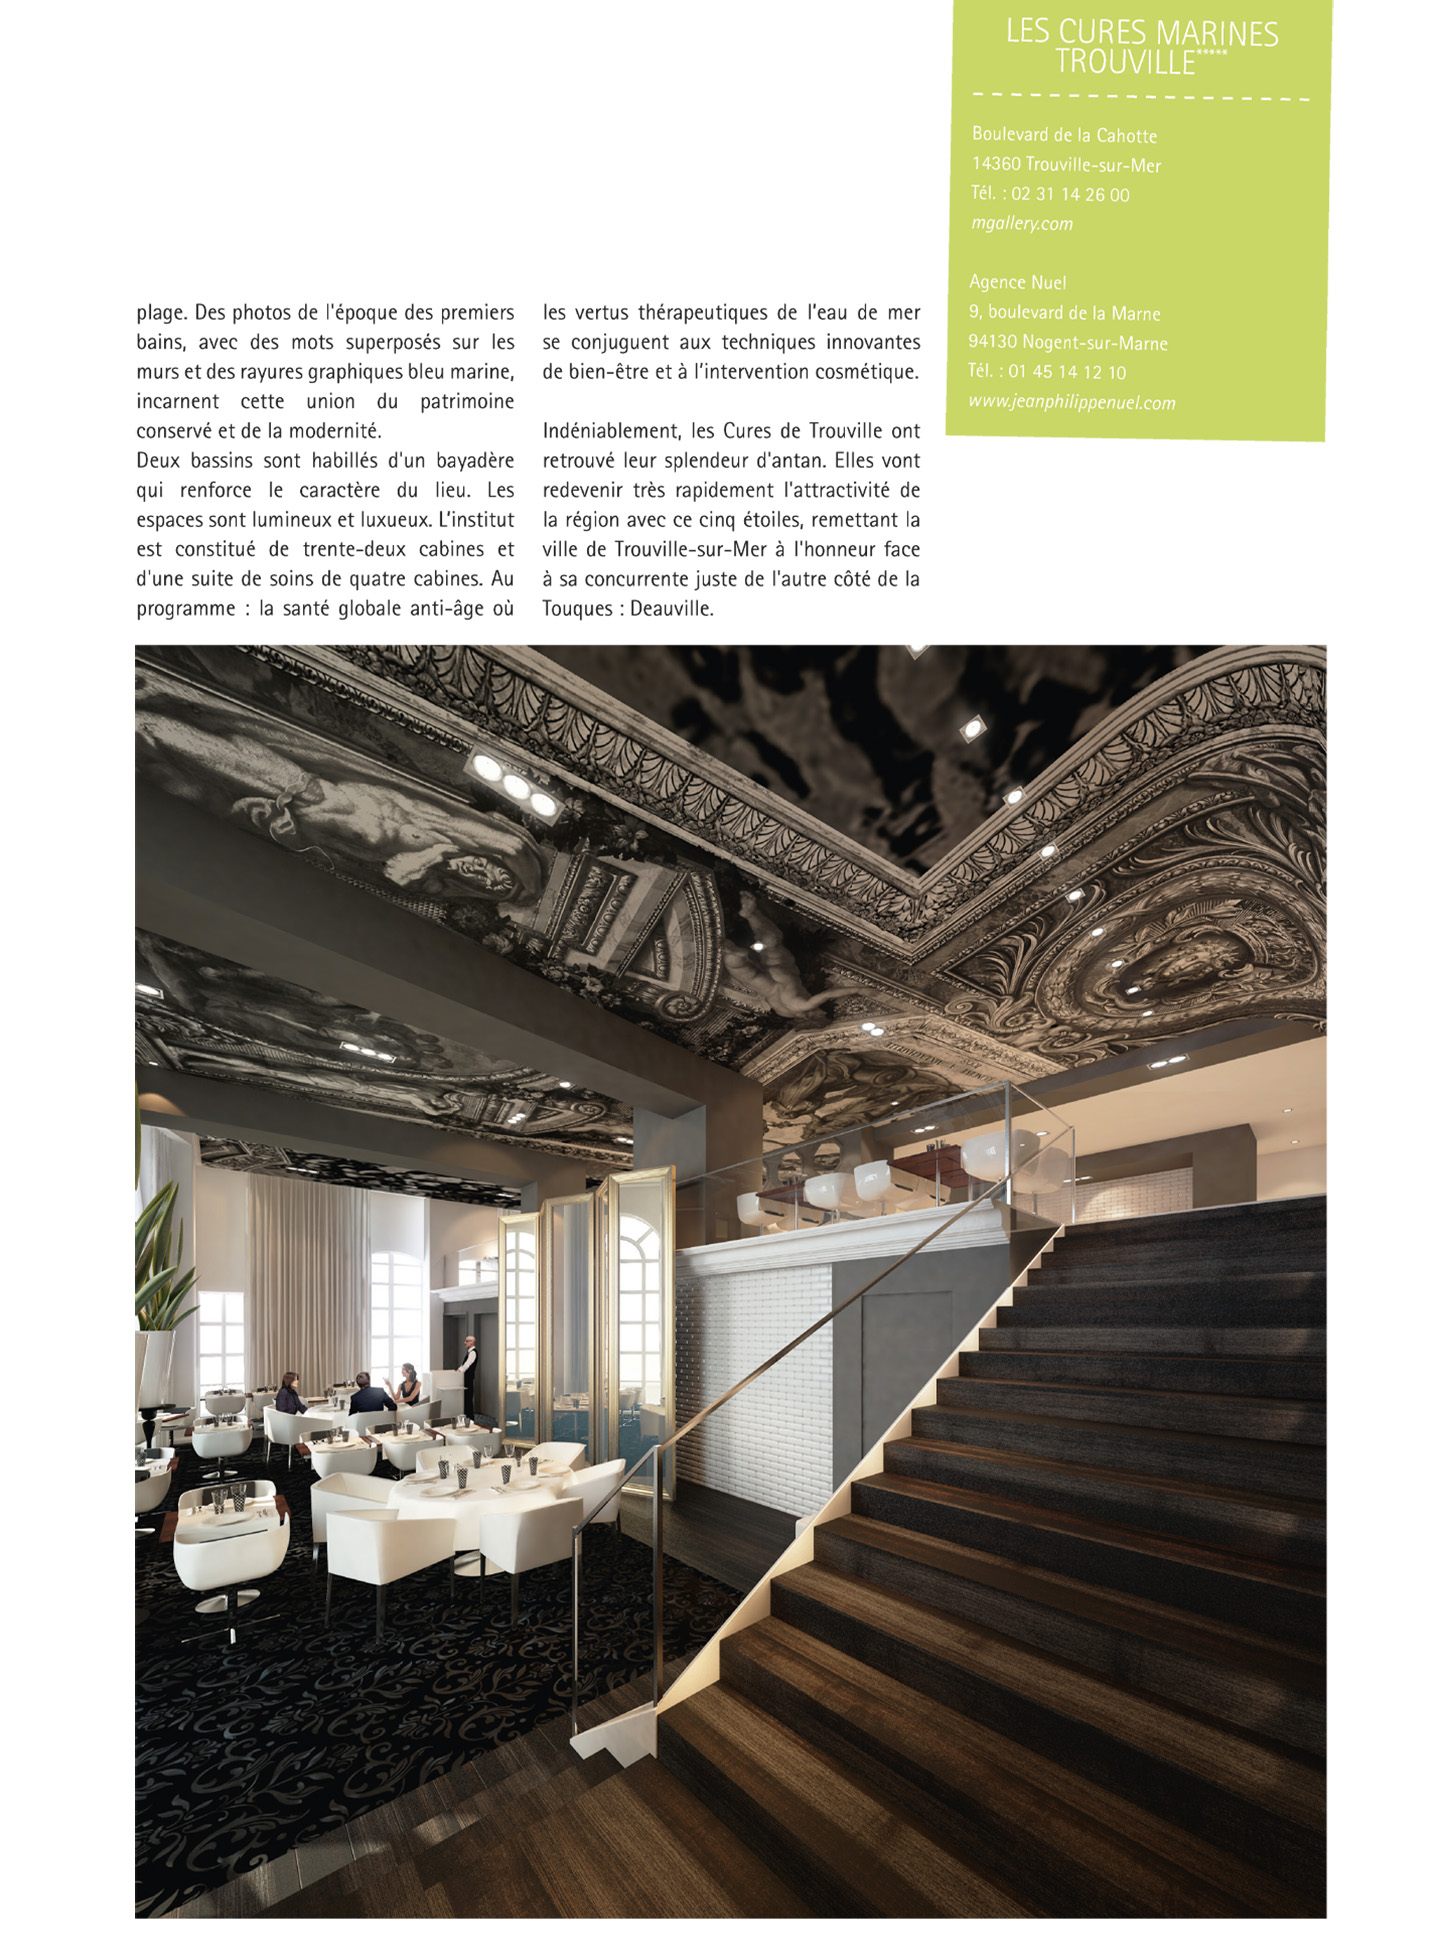 article sur les cures marines de trouville dans le magazine nda, hotel de luxe et spa 5 étoiles réalisé par le studio d'architecture d'intérieur jean-philippe nuel